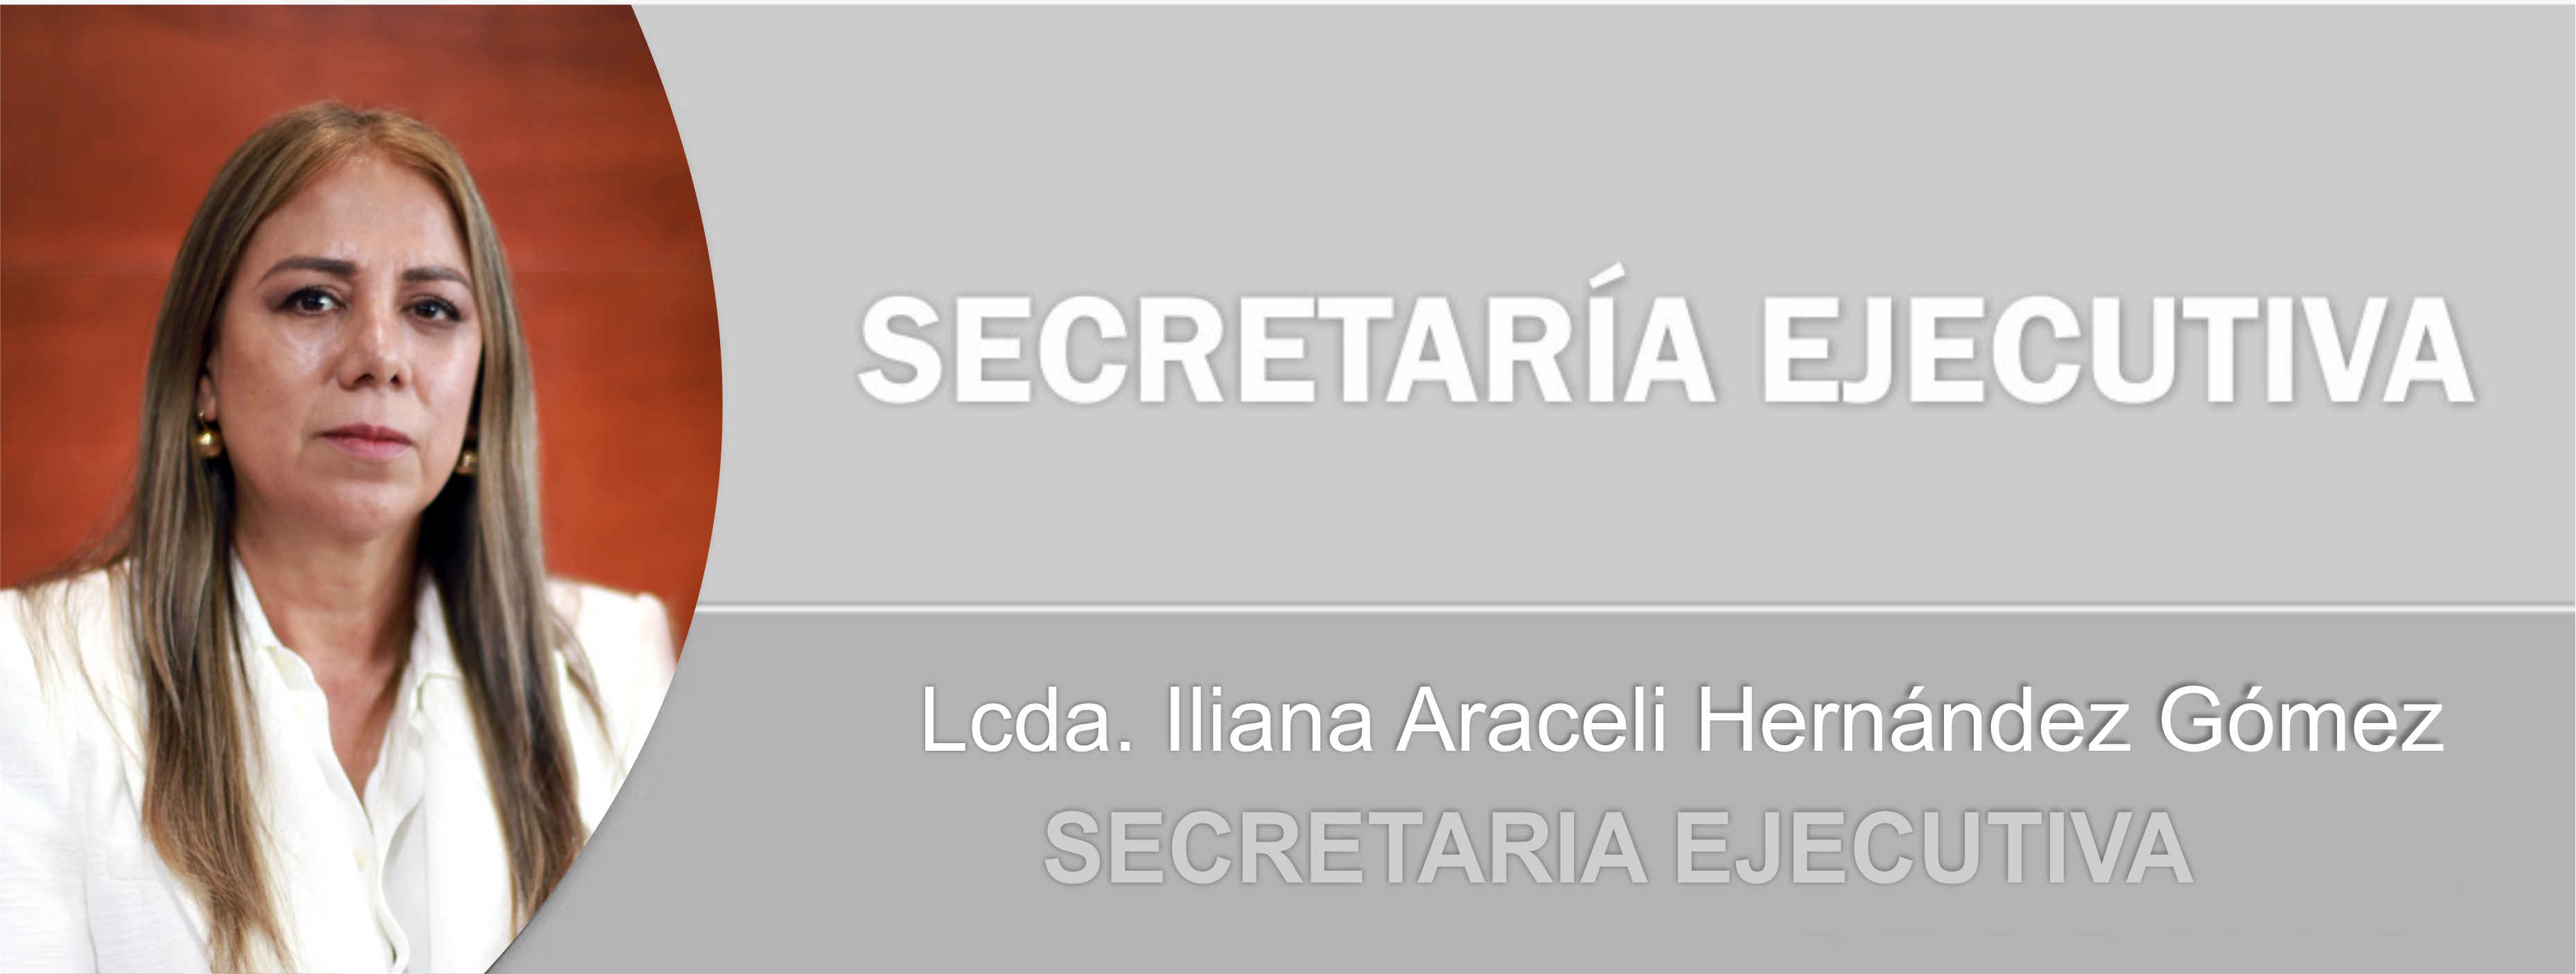 Secretaria ejecutiva